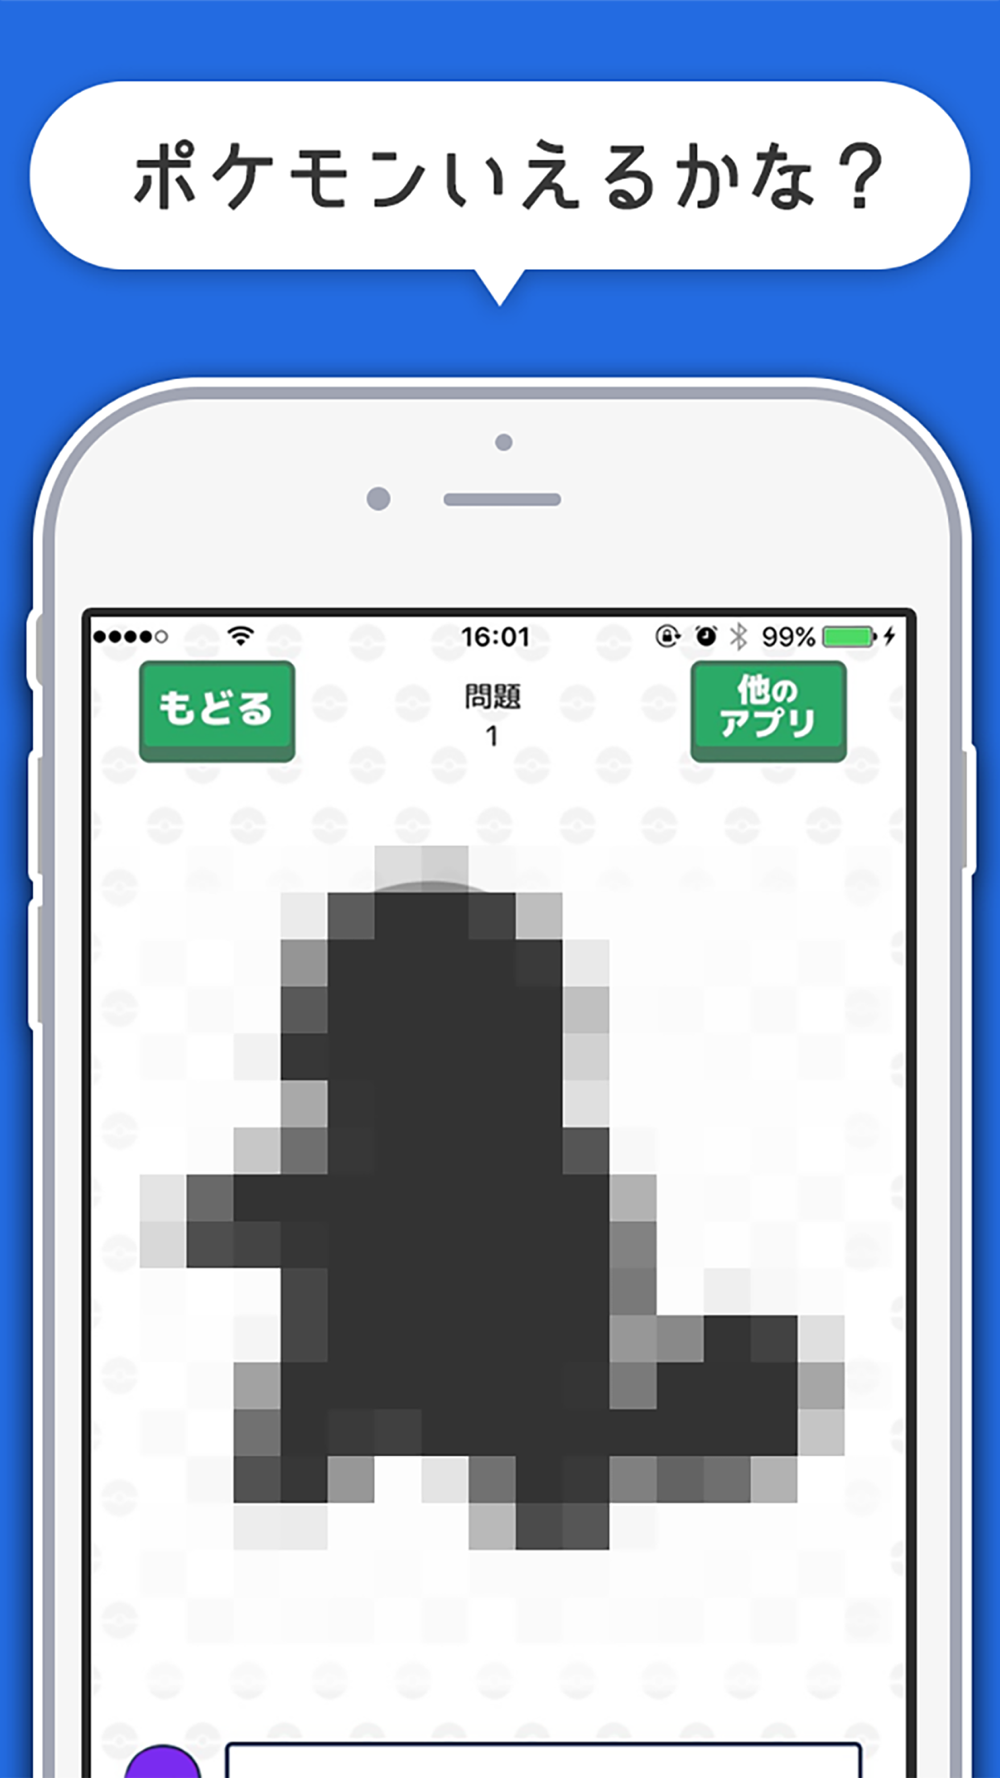 シルエットクイズ 青 For ポケモンgo ポケモンgoのアニメキャラを当てるクイズ Free Download App For Iphone Steprimo Com